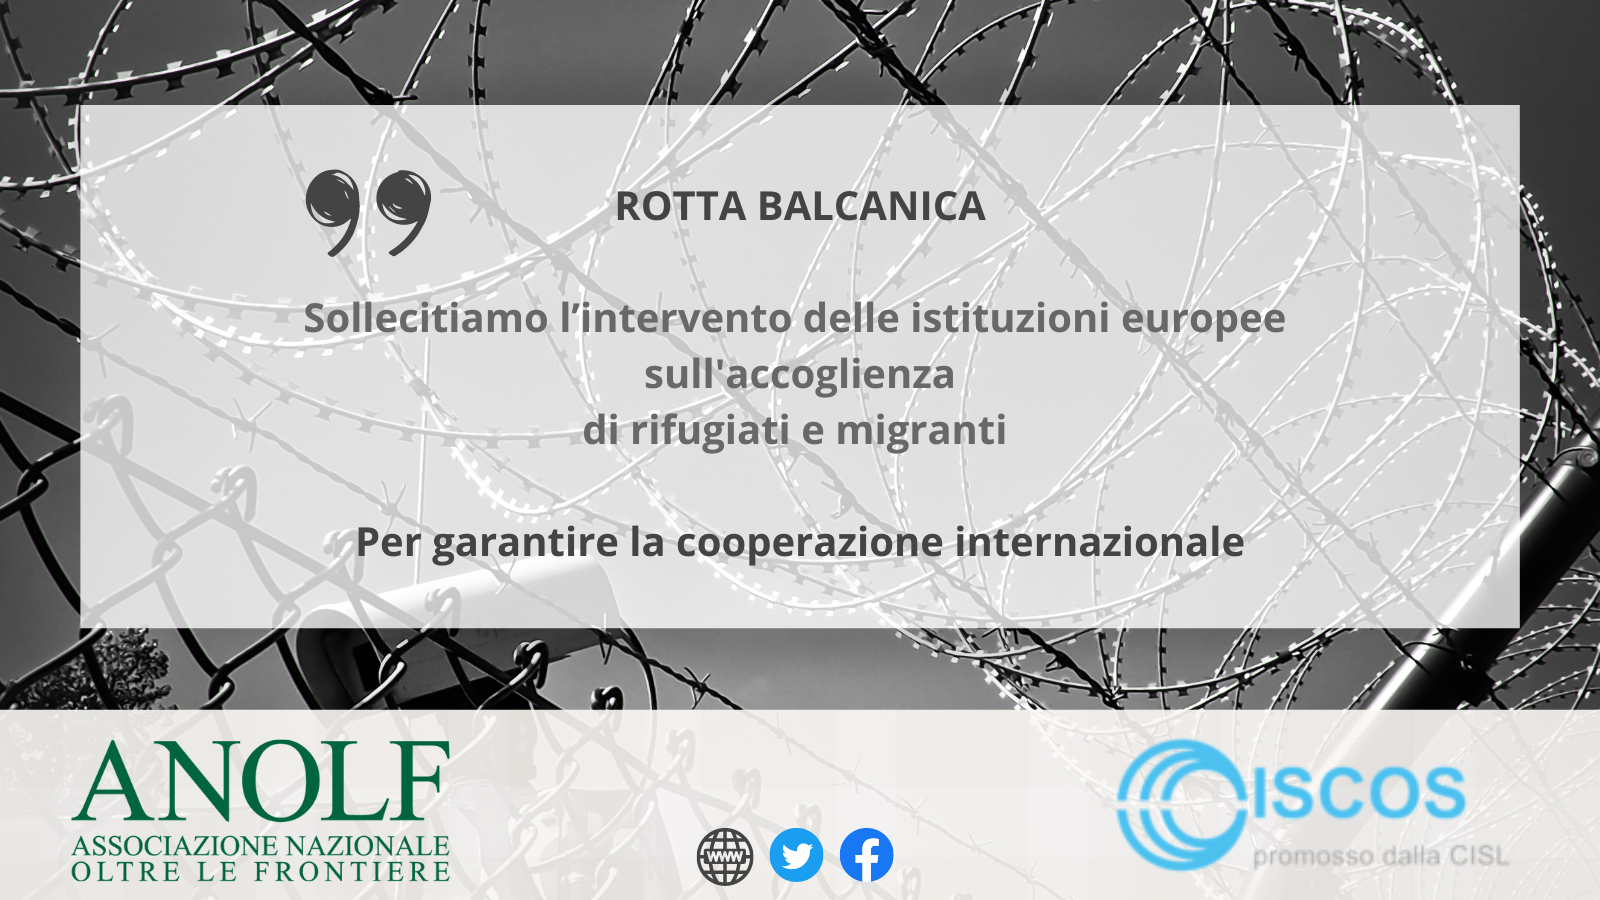 #RottaBalcanica ANOLF e ISCOS CISL “Sollecitiamo l’intervento delle istituzioni europee sull’accoglienza di rifugiati e migranti, per garantire la cooperazione internazionale”.